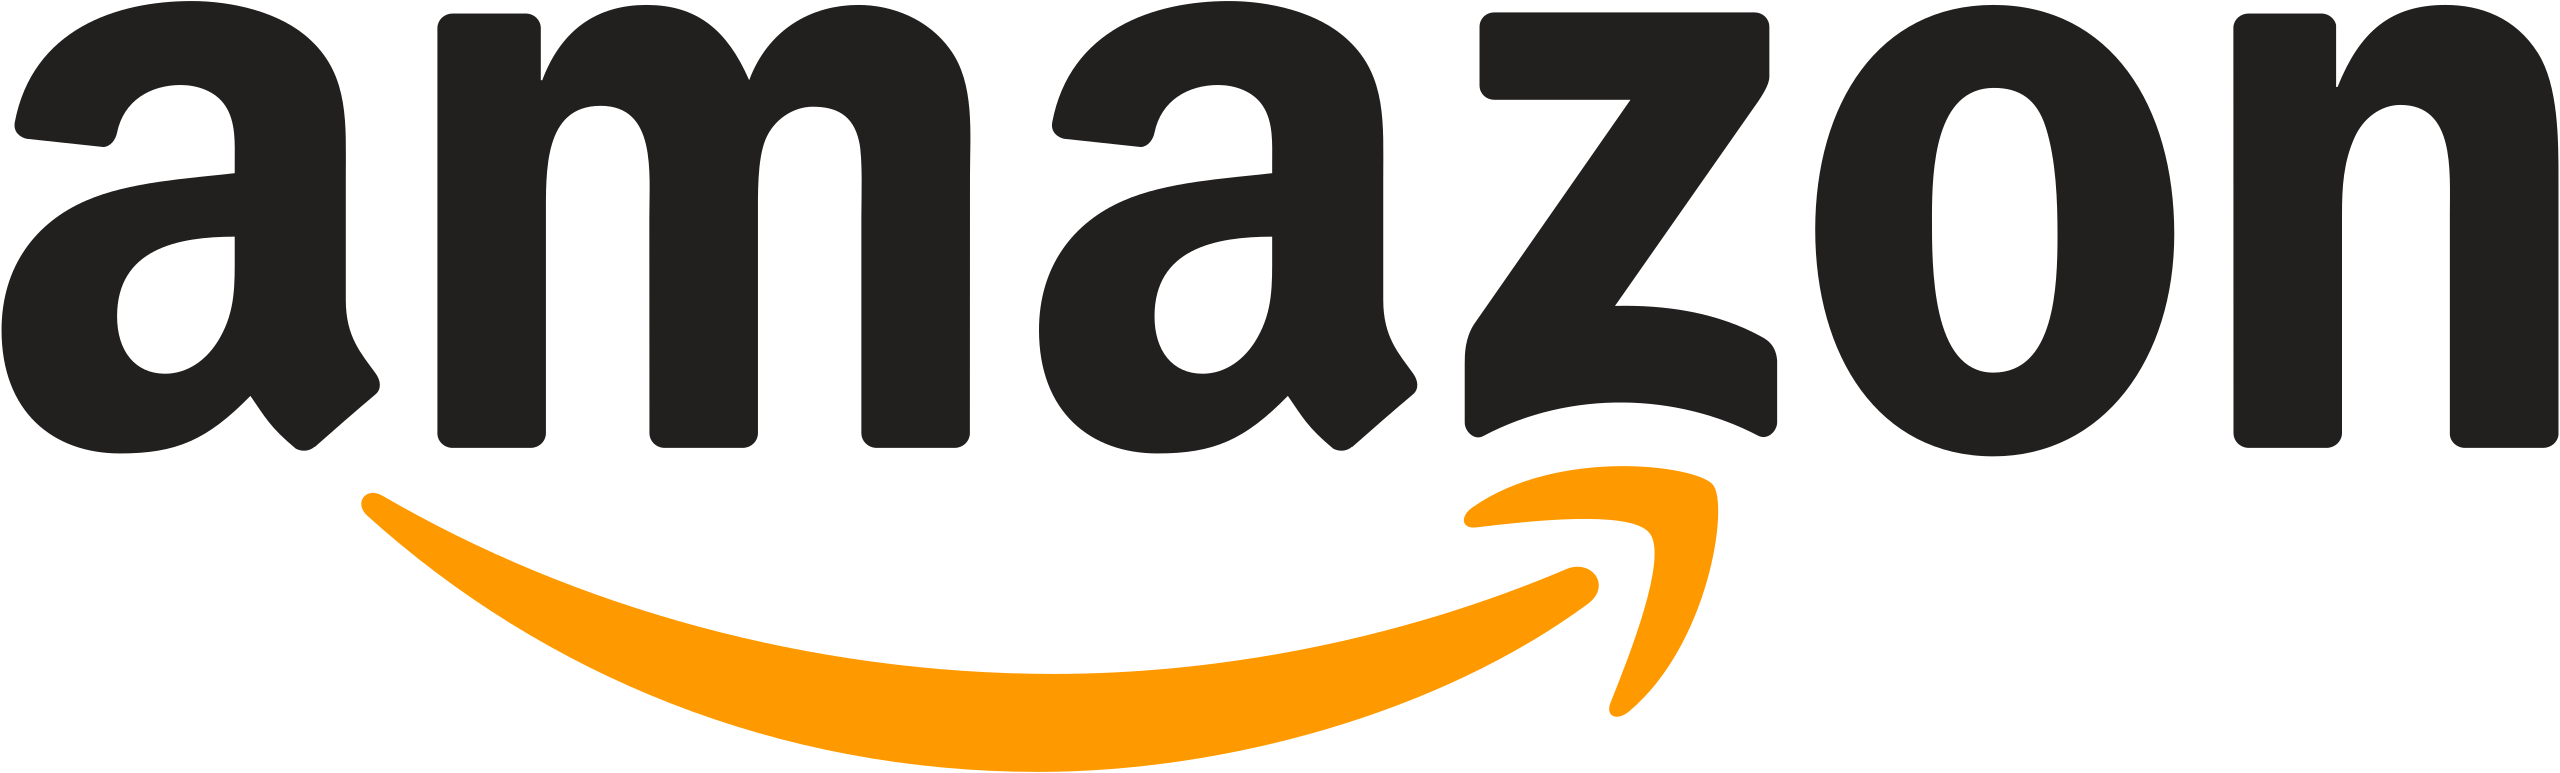 File:Amazon logo.svg - Wikipedia